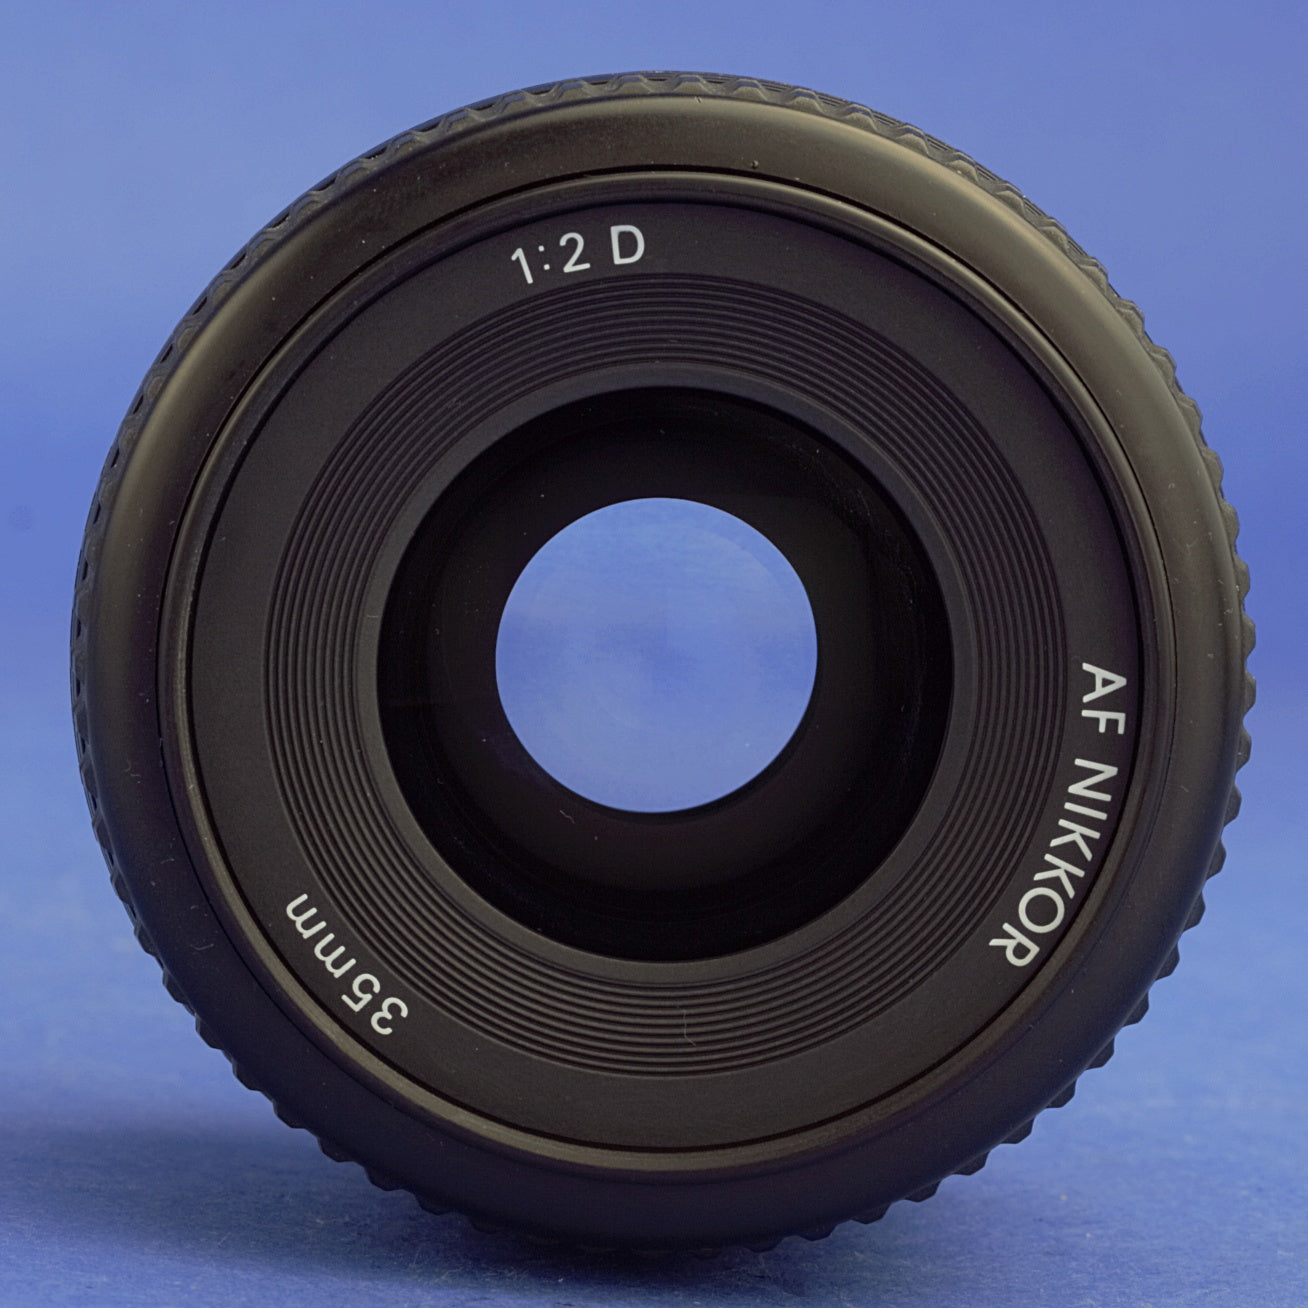 Nikon AF Nikkor 35mm F2 D Lens Near Mint Condition